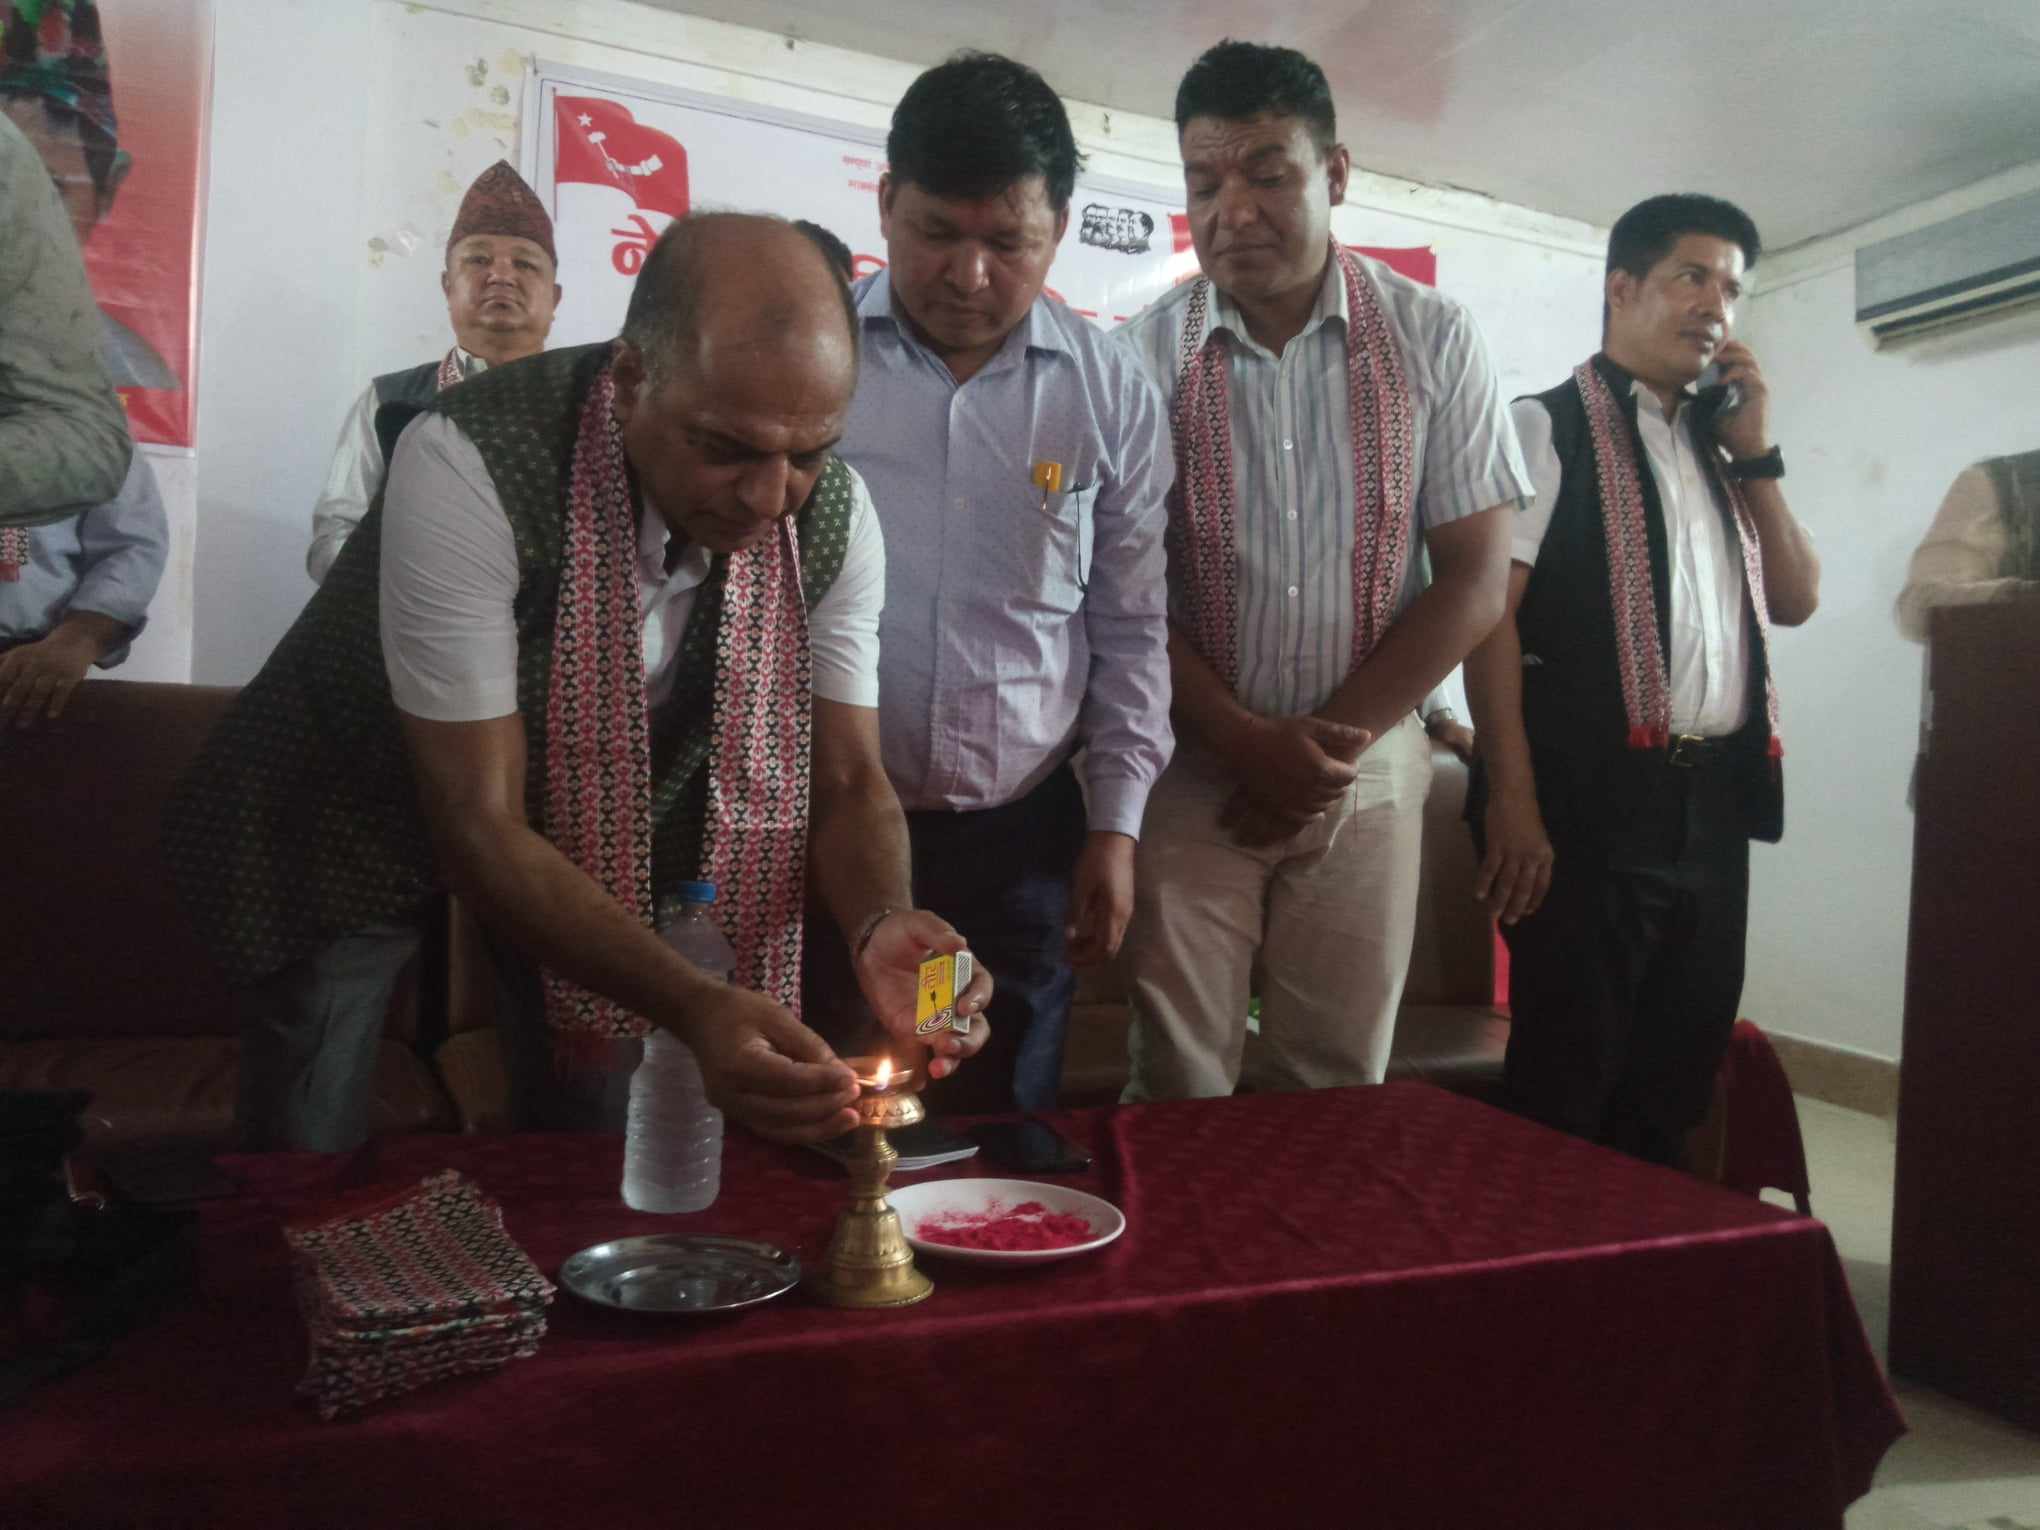 नेपाल दलित मुक्ति मोर्चा रुपन्देहीको चौथो जिल्ला भेला बुटवलमा सम्पन्न ः संयोजकमा ध्रुव लामगाडे चयन